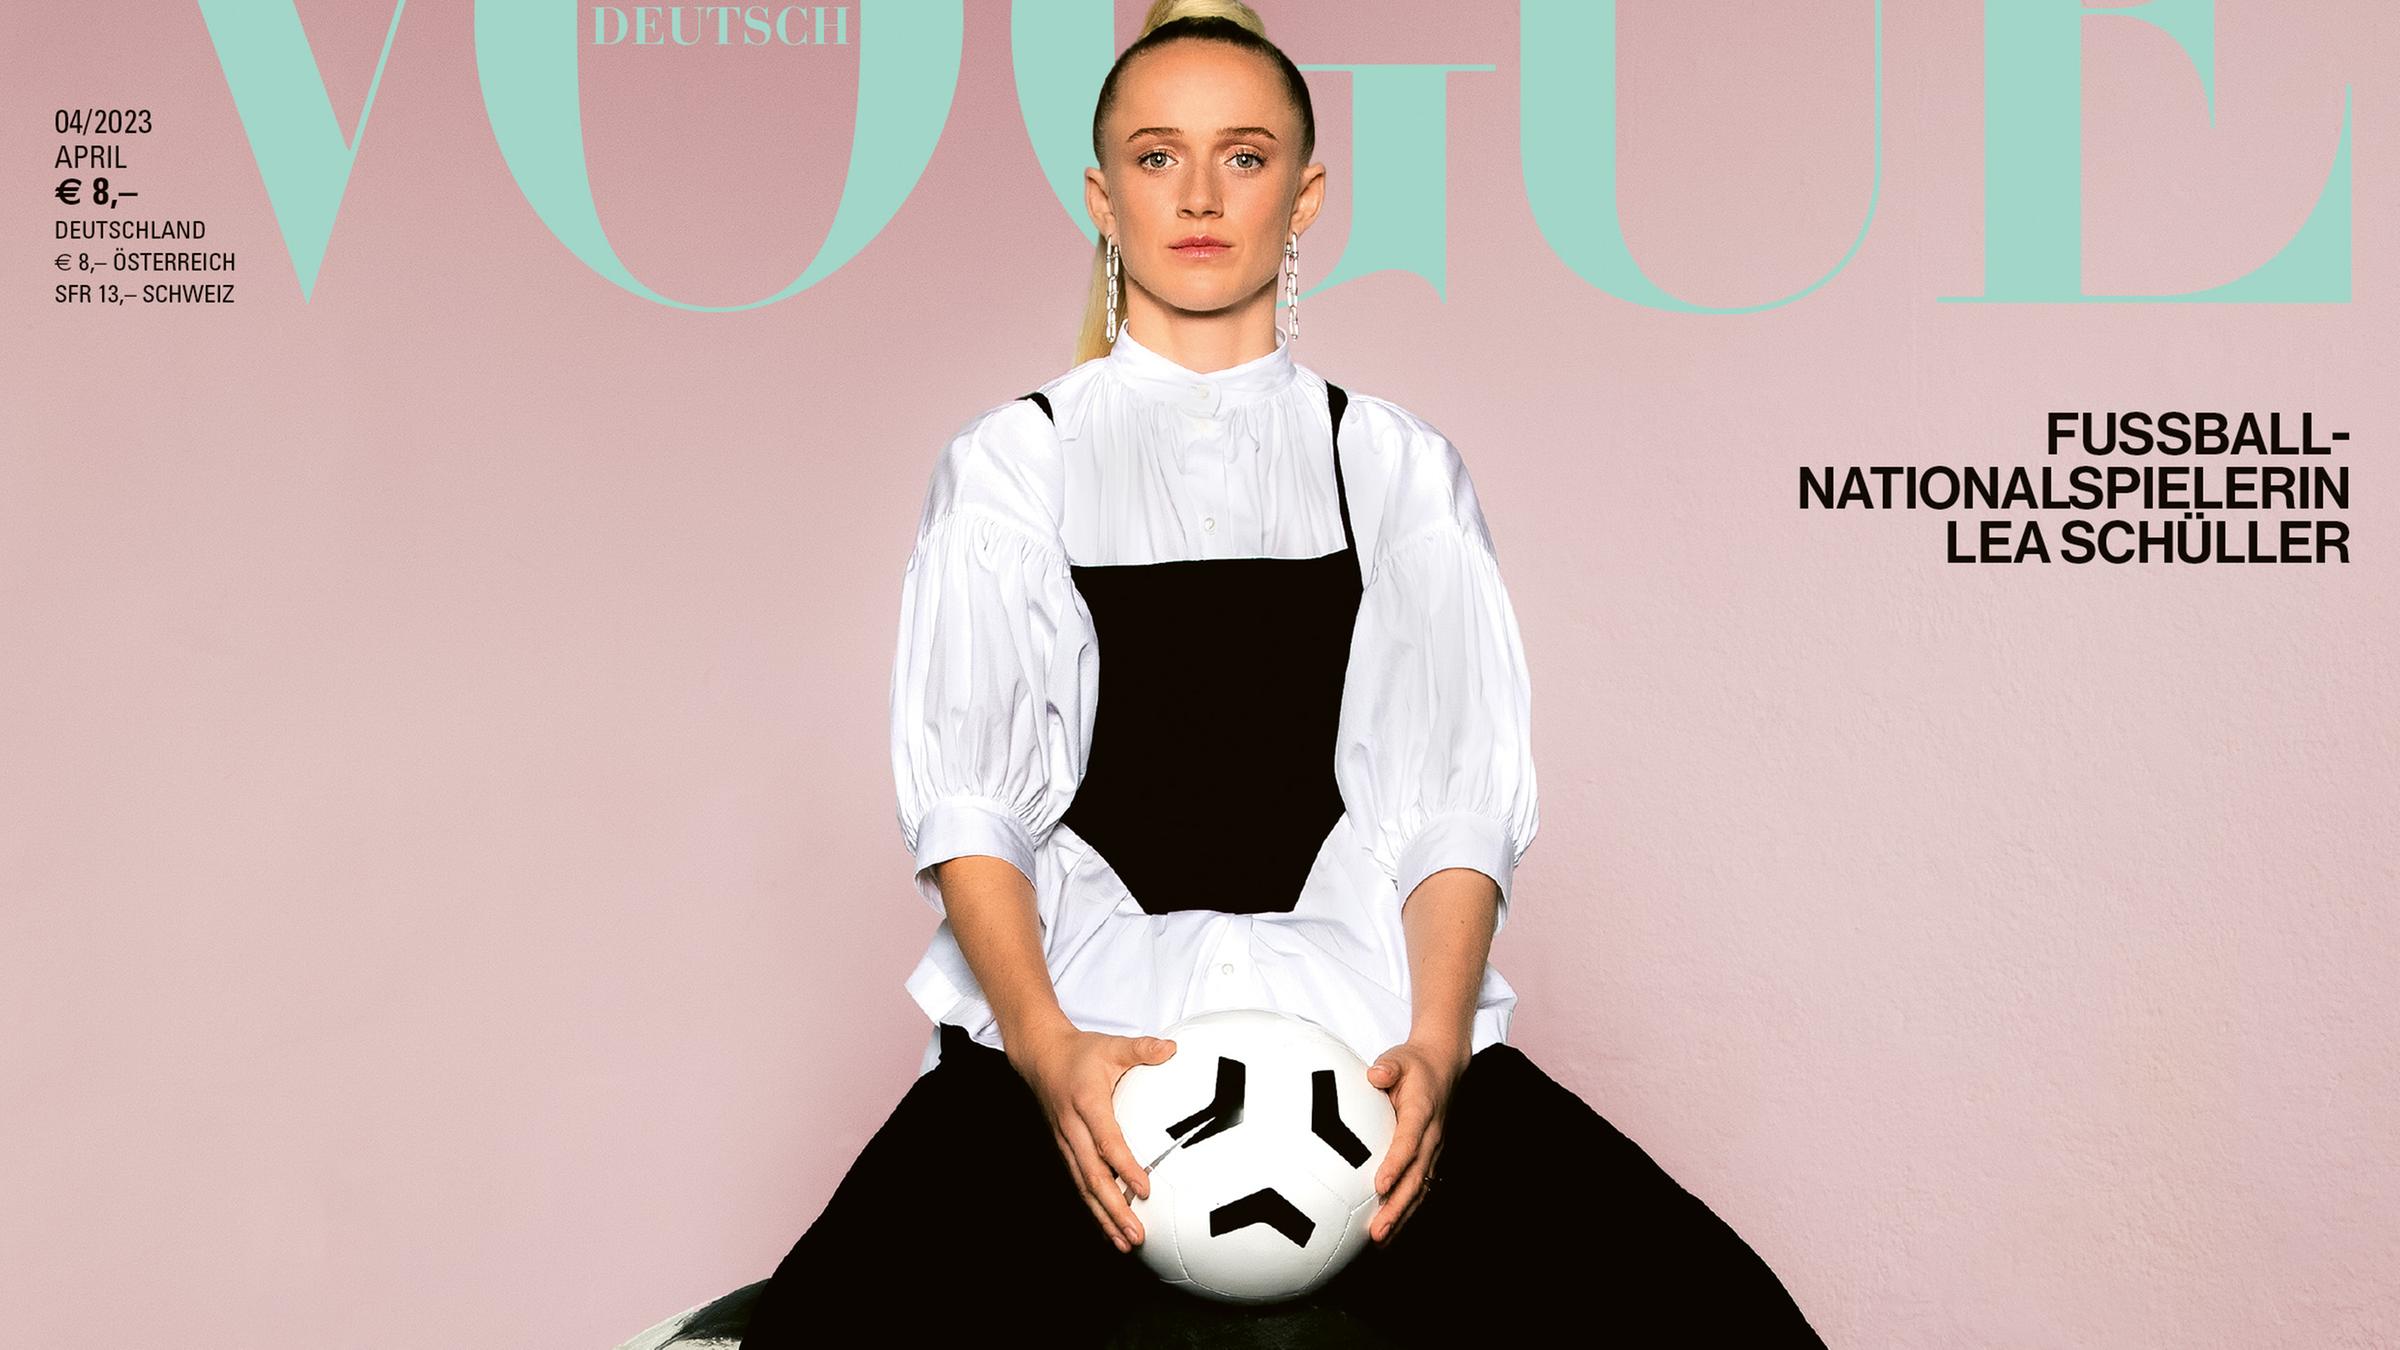 Lea Schüller auf Vogue Cover sitzt auf Ball rosa Hintergrund 